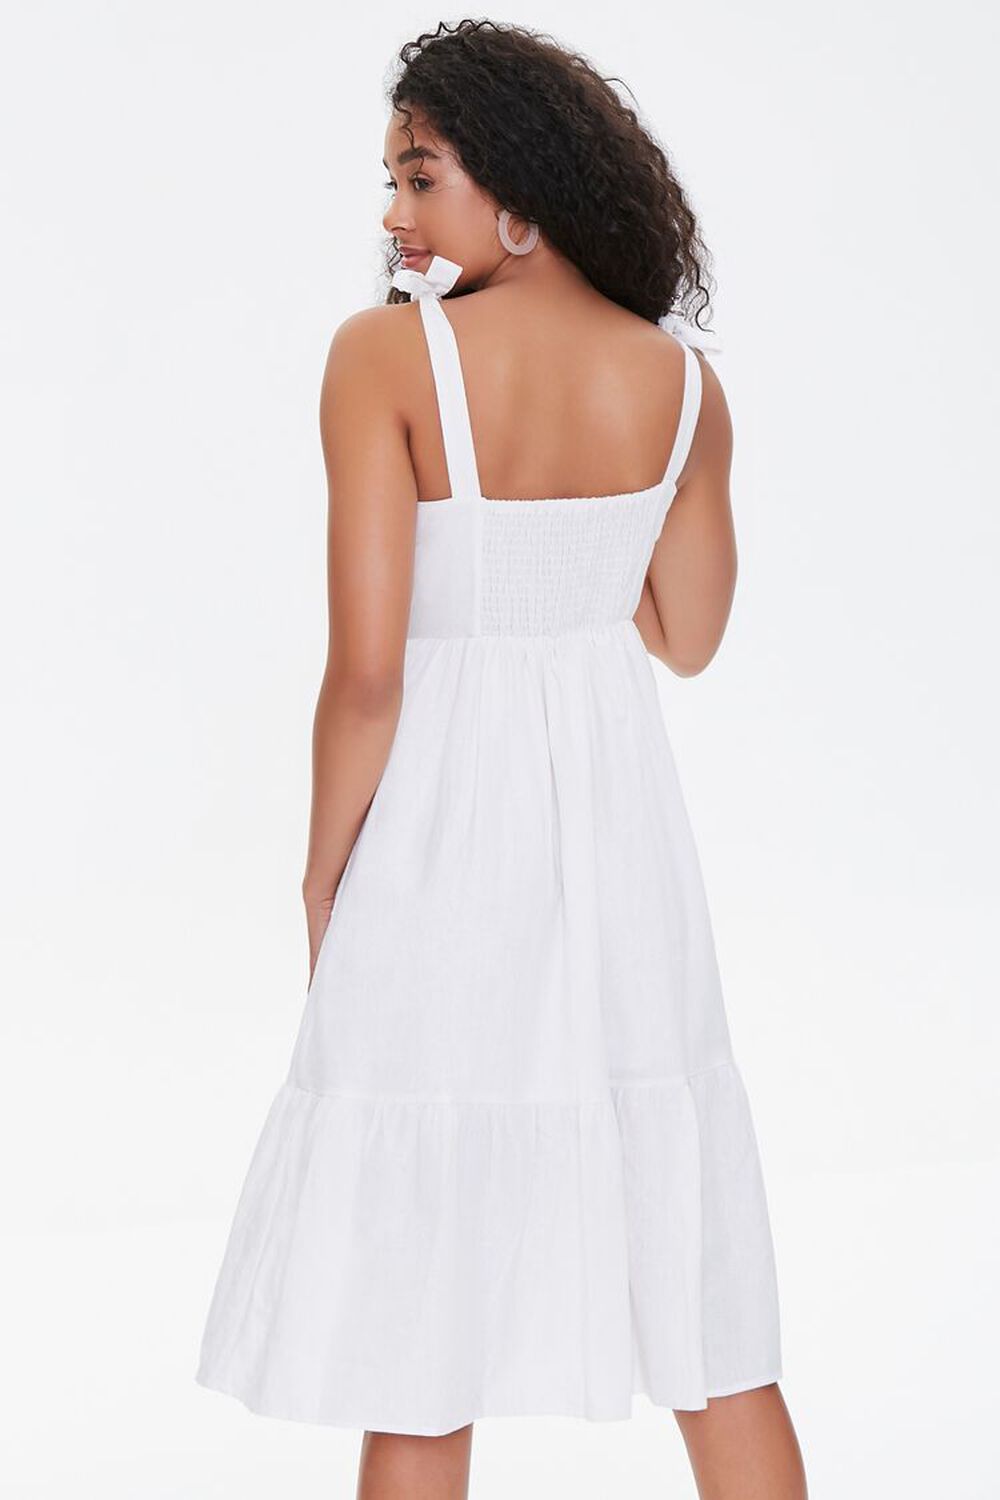 WHITE Buttoned Self-Tie Midi Dress, image 3